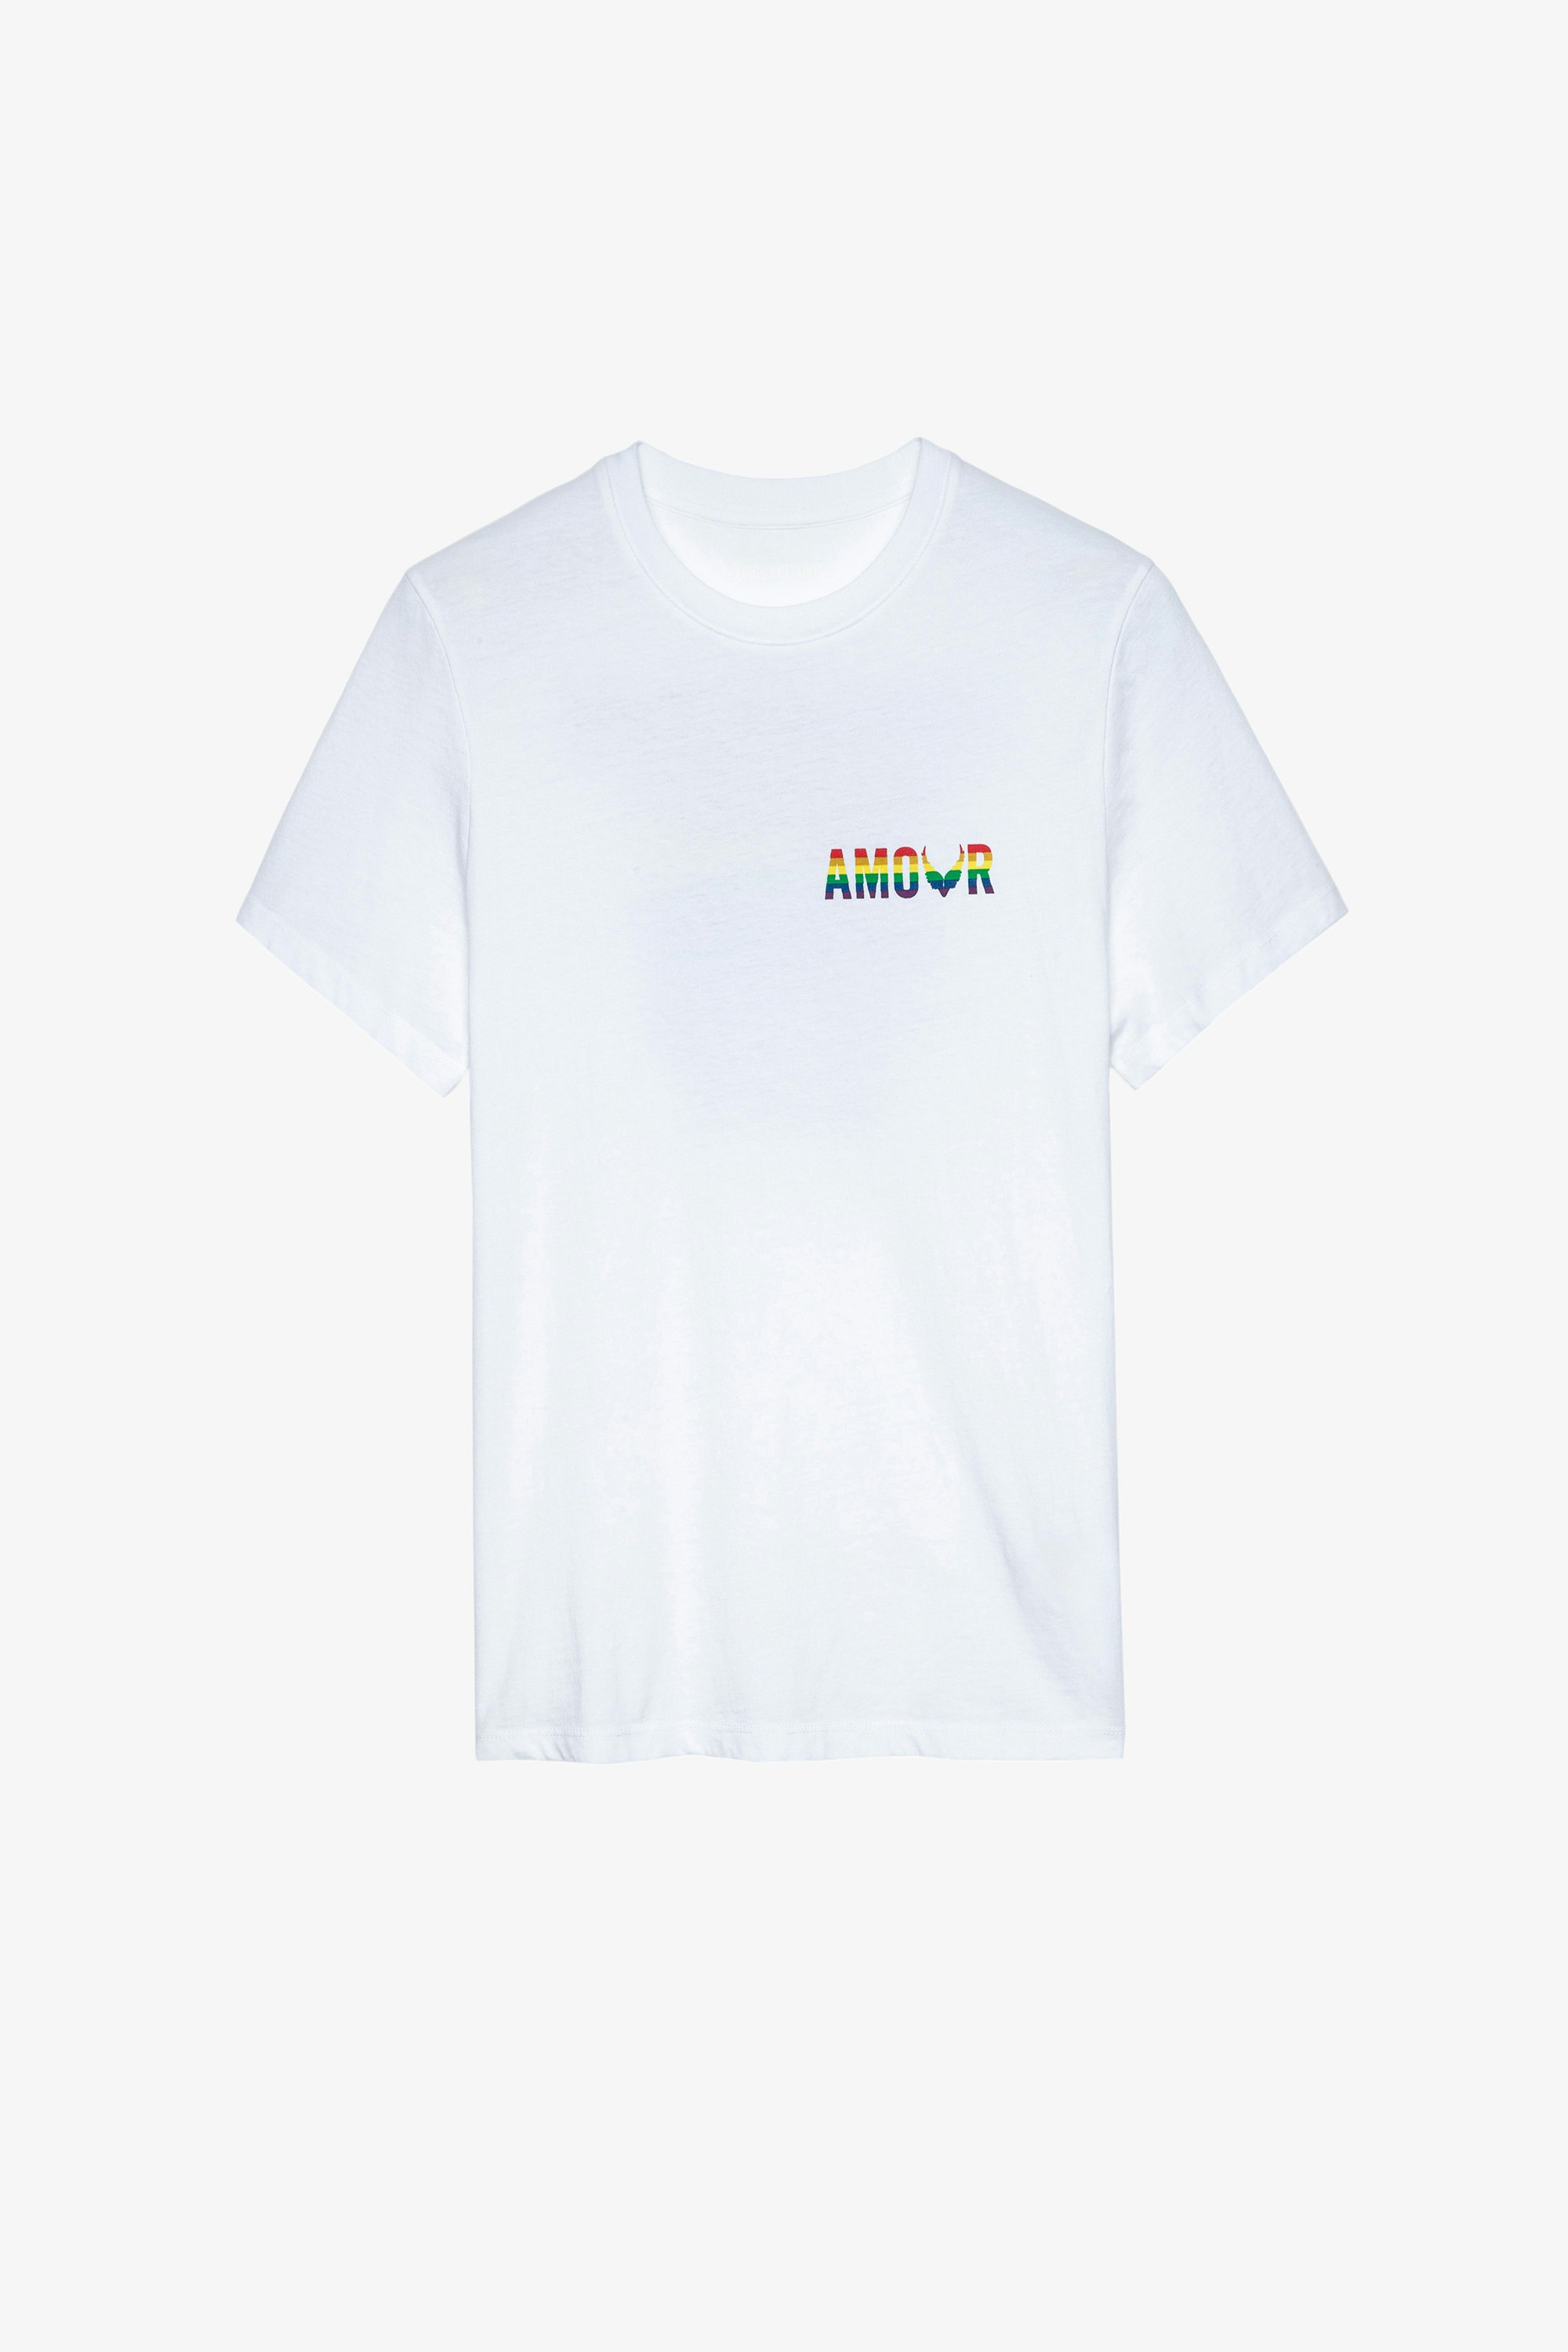 Camiseta Tommy Amour Wings Camiseta de mujer de algodón blanco con estampado Amour multicolor